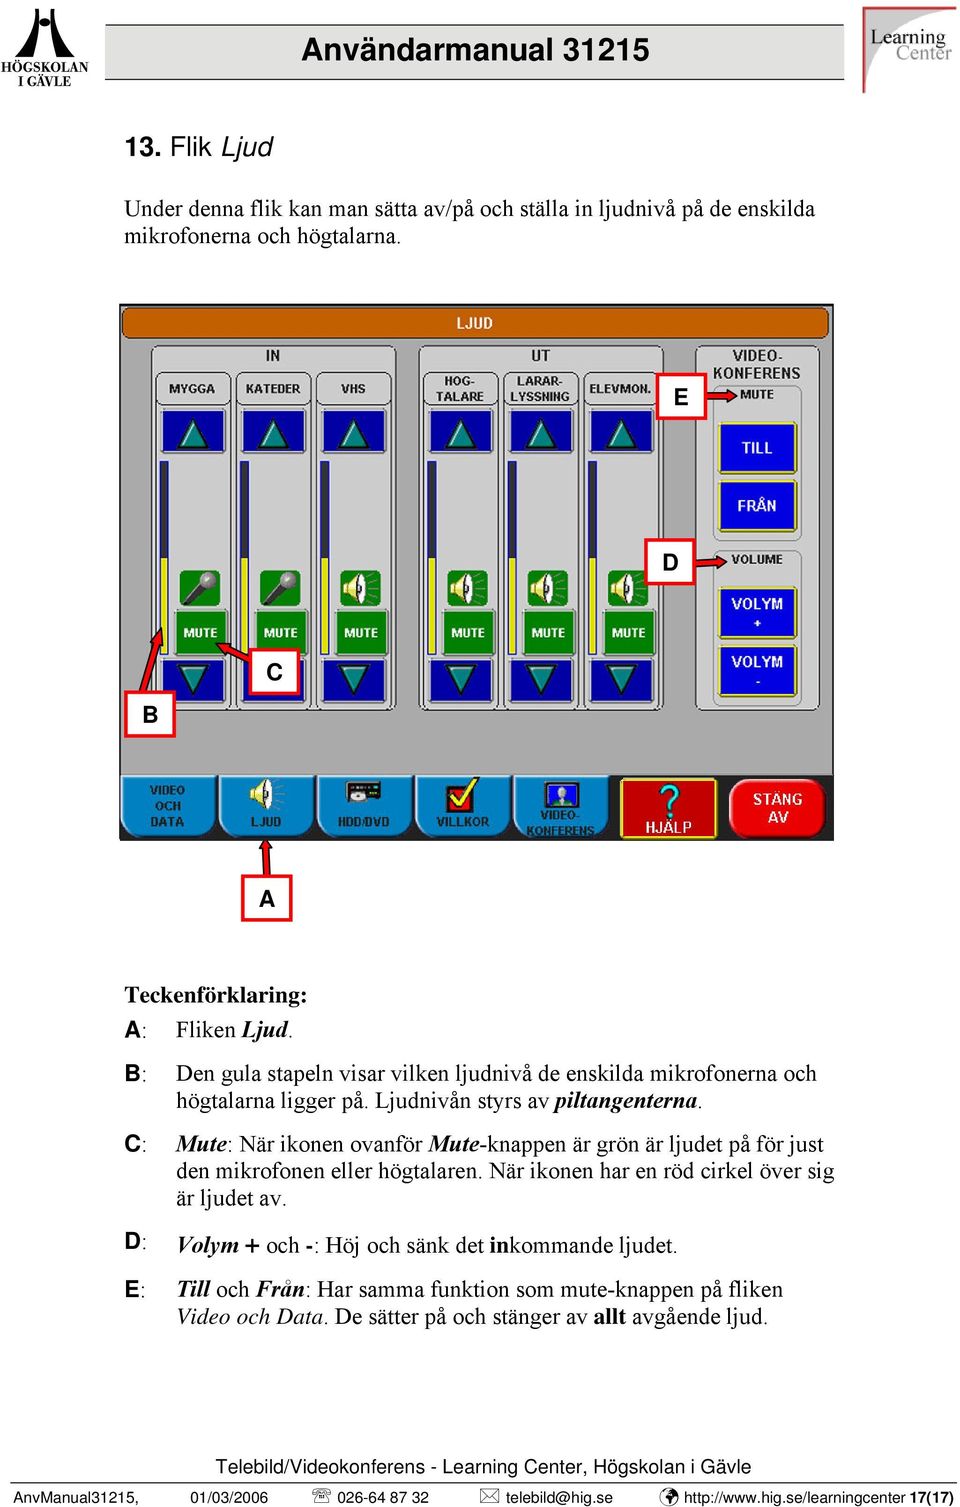 C: Mute: När ikonen ovanför Mute-knappen är grön är ljudet på för just den mikrofonen eller högtalaren. När ikonen har en röd cirkel över sig är ljudet av.